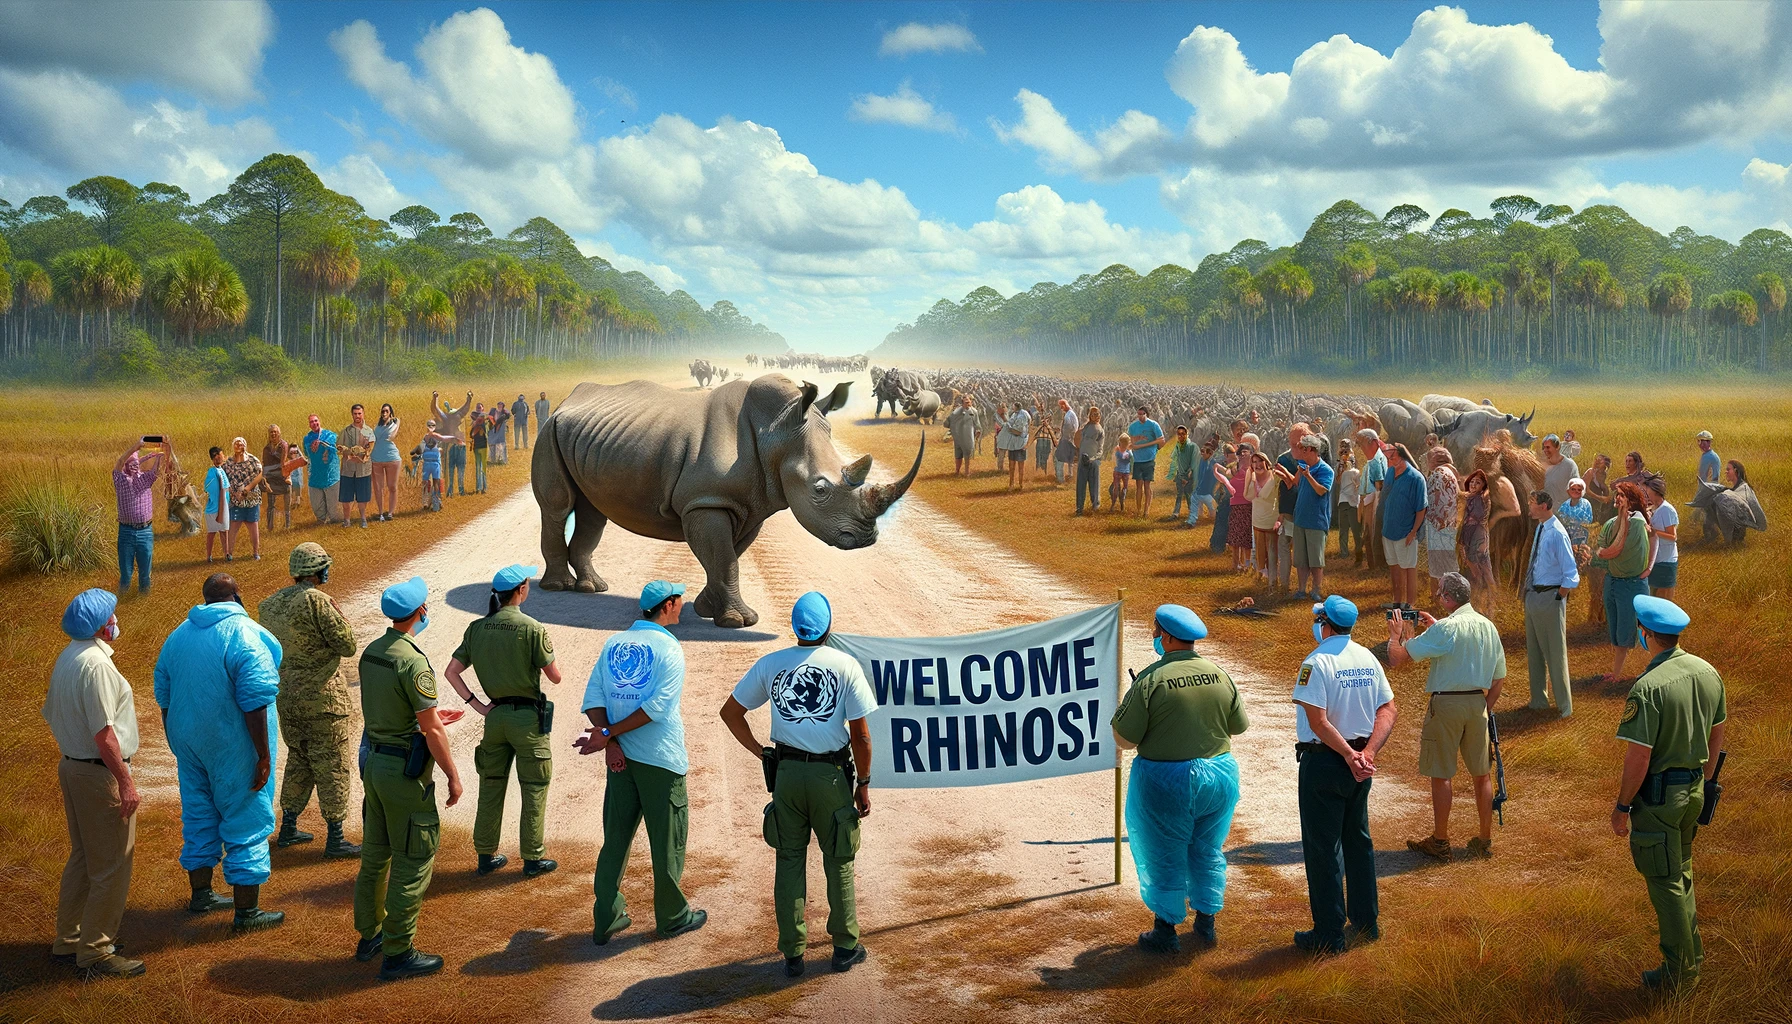 UN-USA-florida-endangered-rhino-conservation-program-csdn